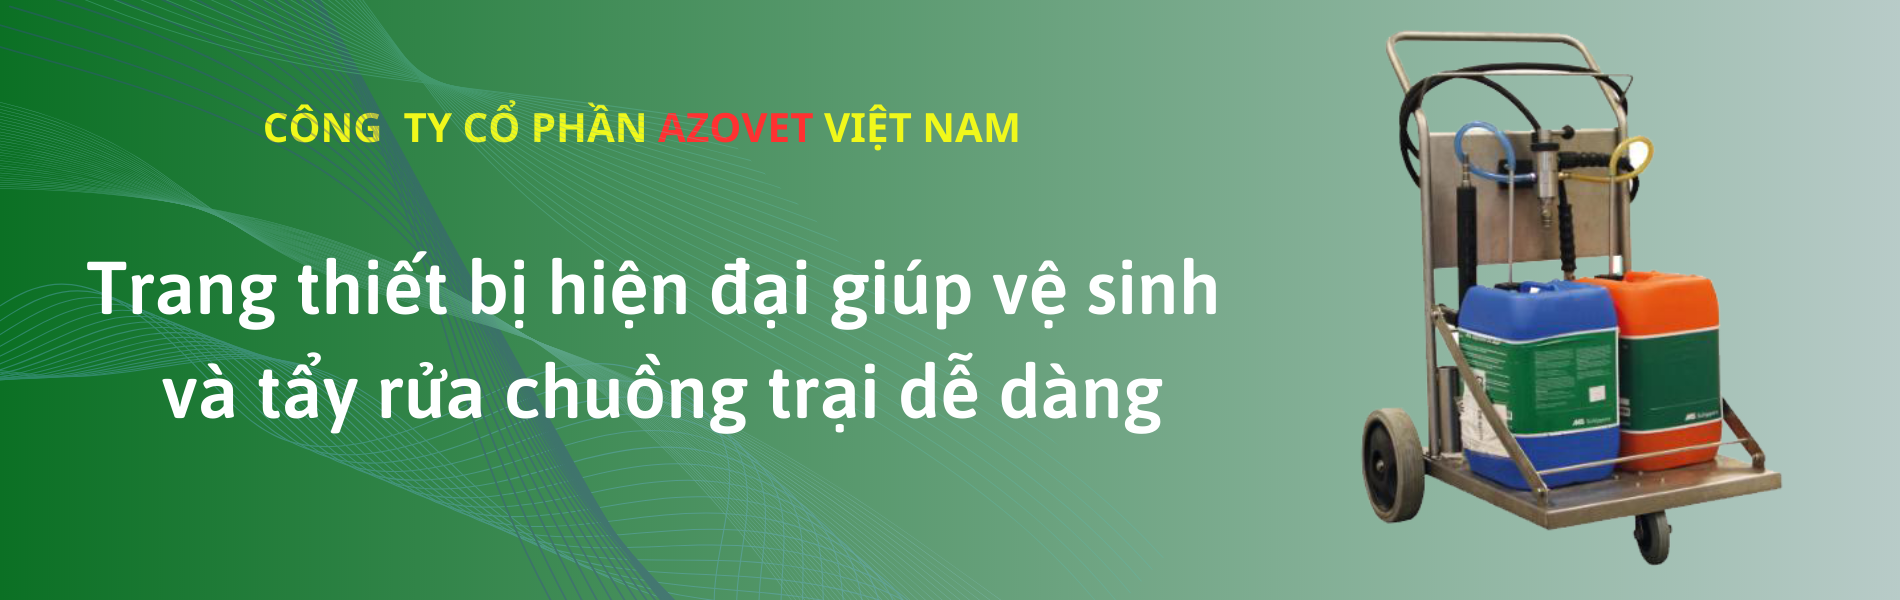 Công ty cổ phần AZOVET Việt Nam